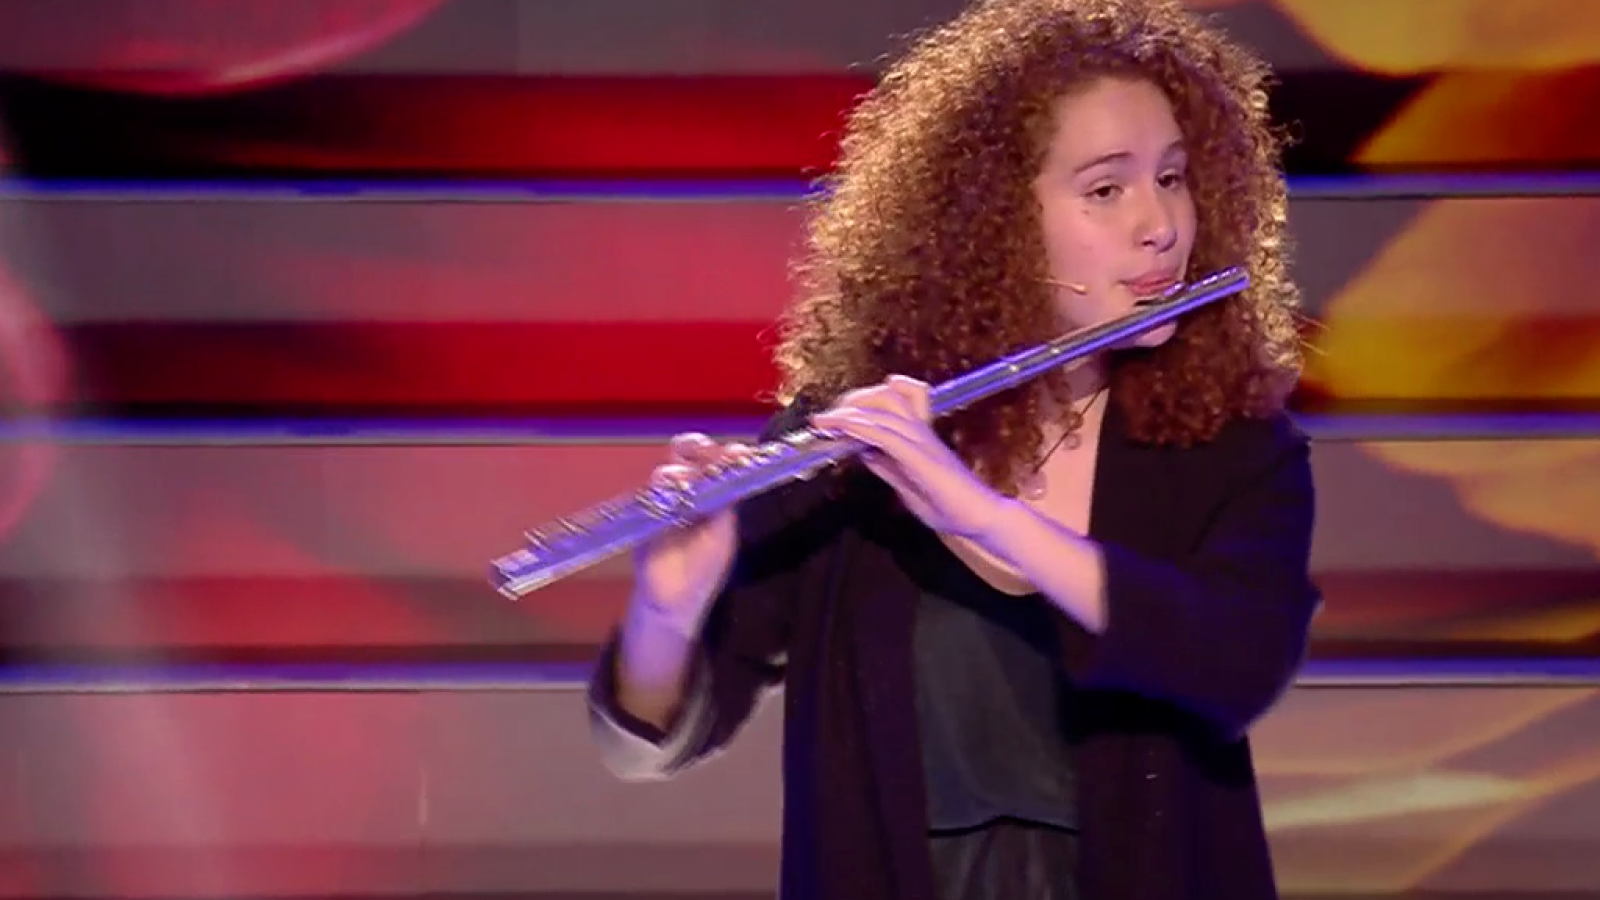 Andrea Rozas hace vibrar el auditorio de prodigios con su flauta